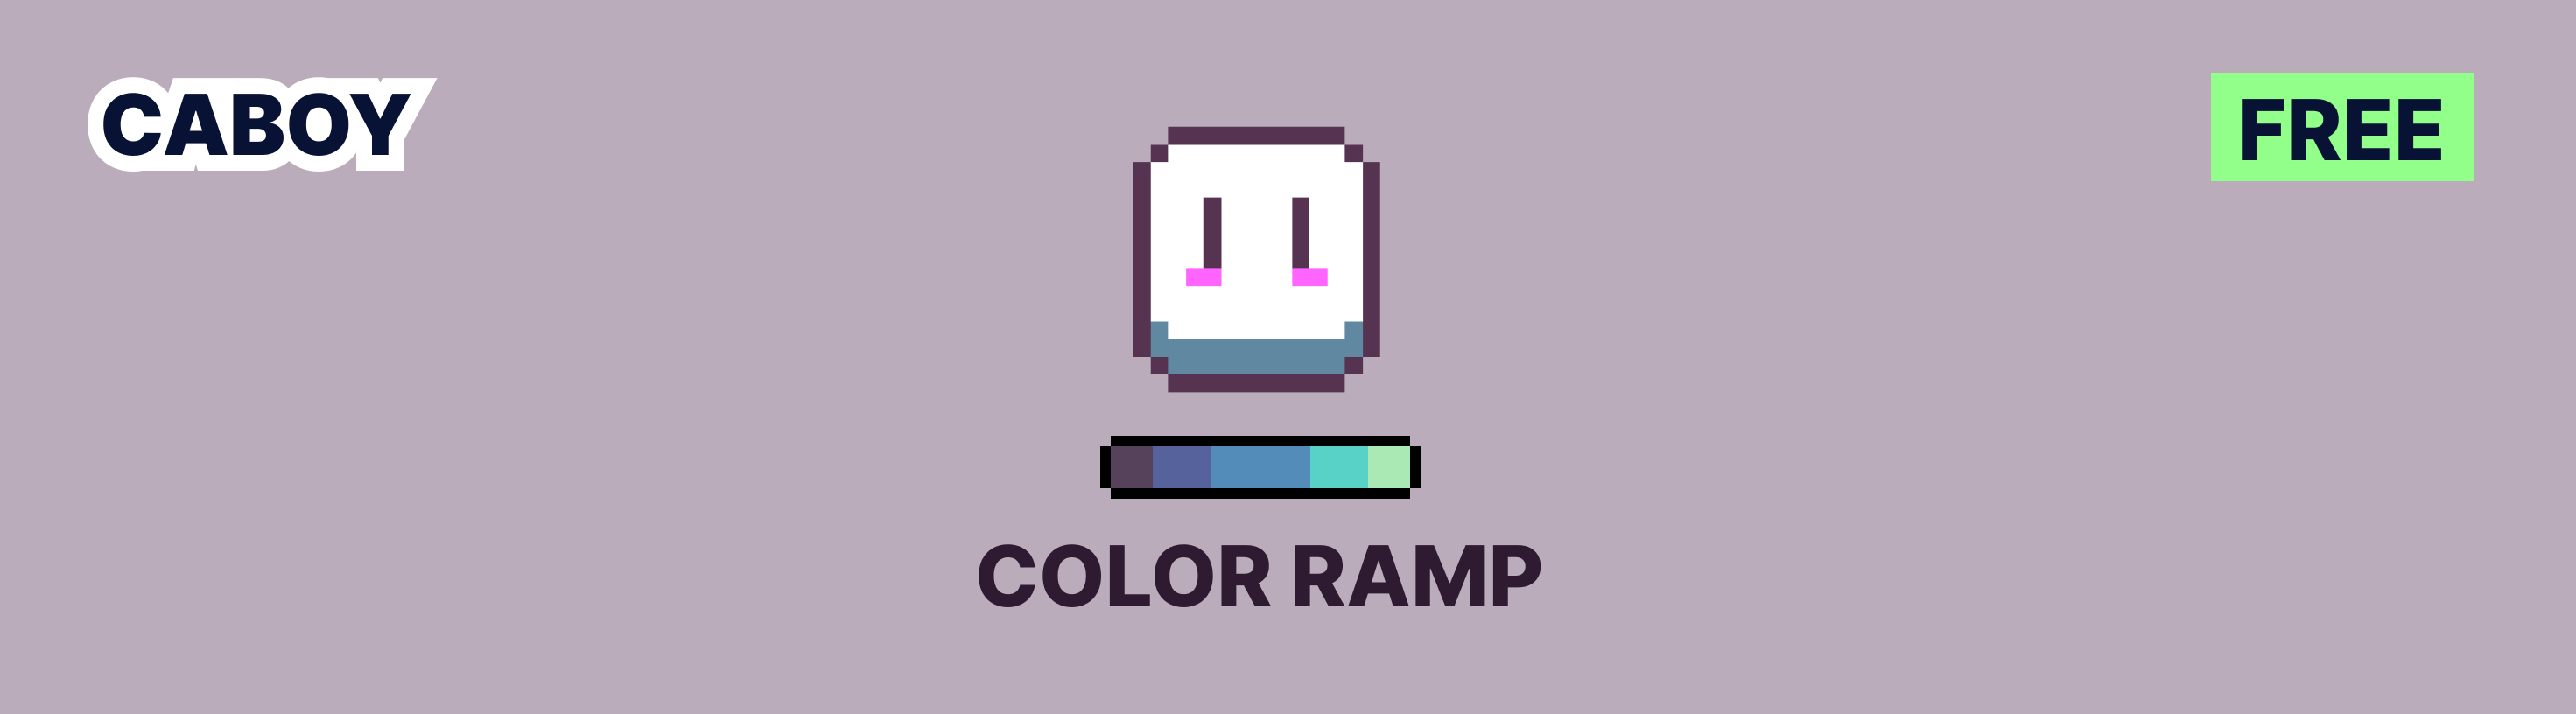 Aseprite Color Ramp Script (Color Hue v1.0)